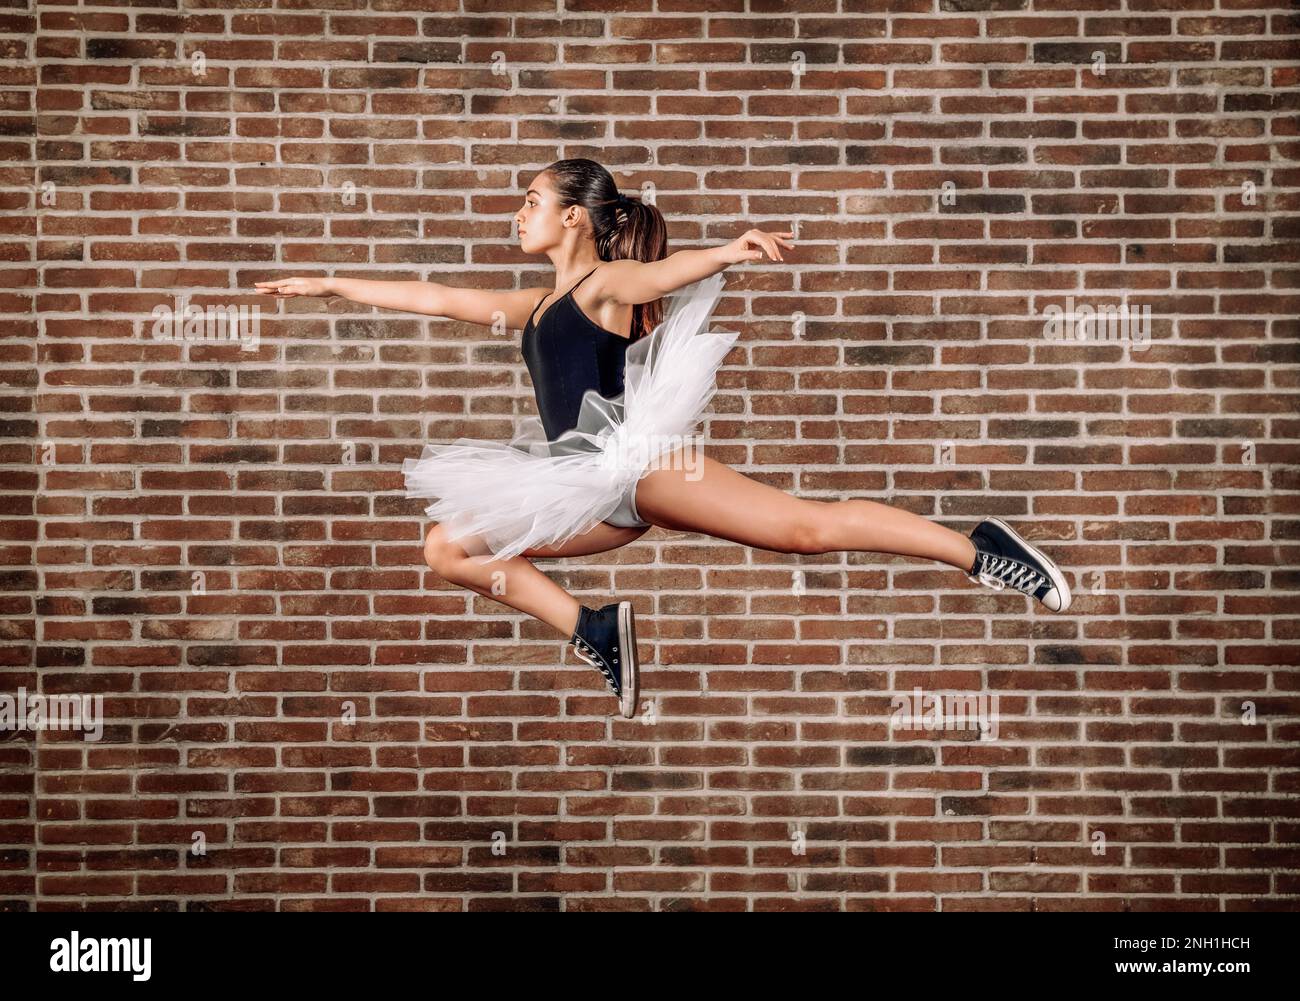 Vista laterale corpo intero di giovane ballerina in tutu bianco e sneakers nero che saltano contro muro di mattoni Foto Stock